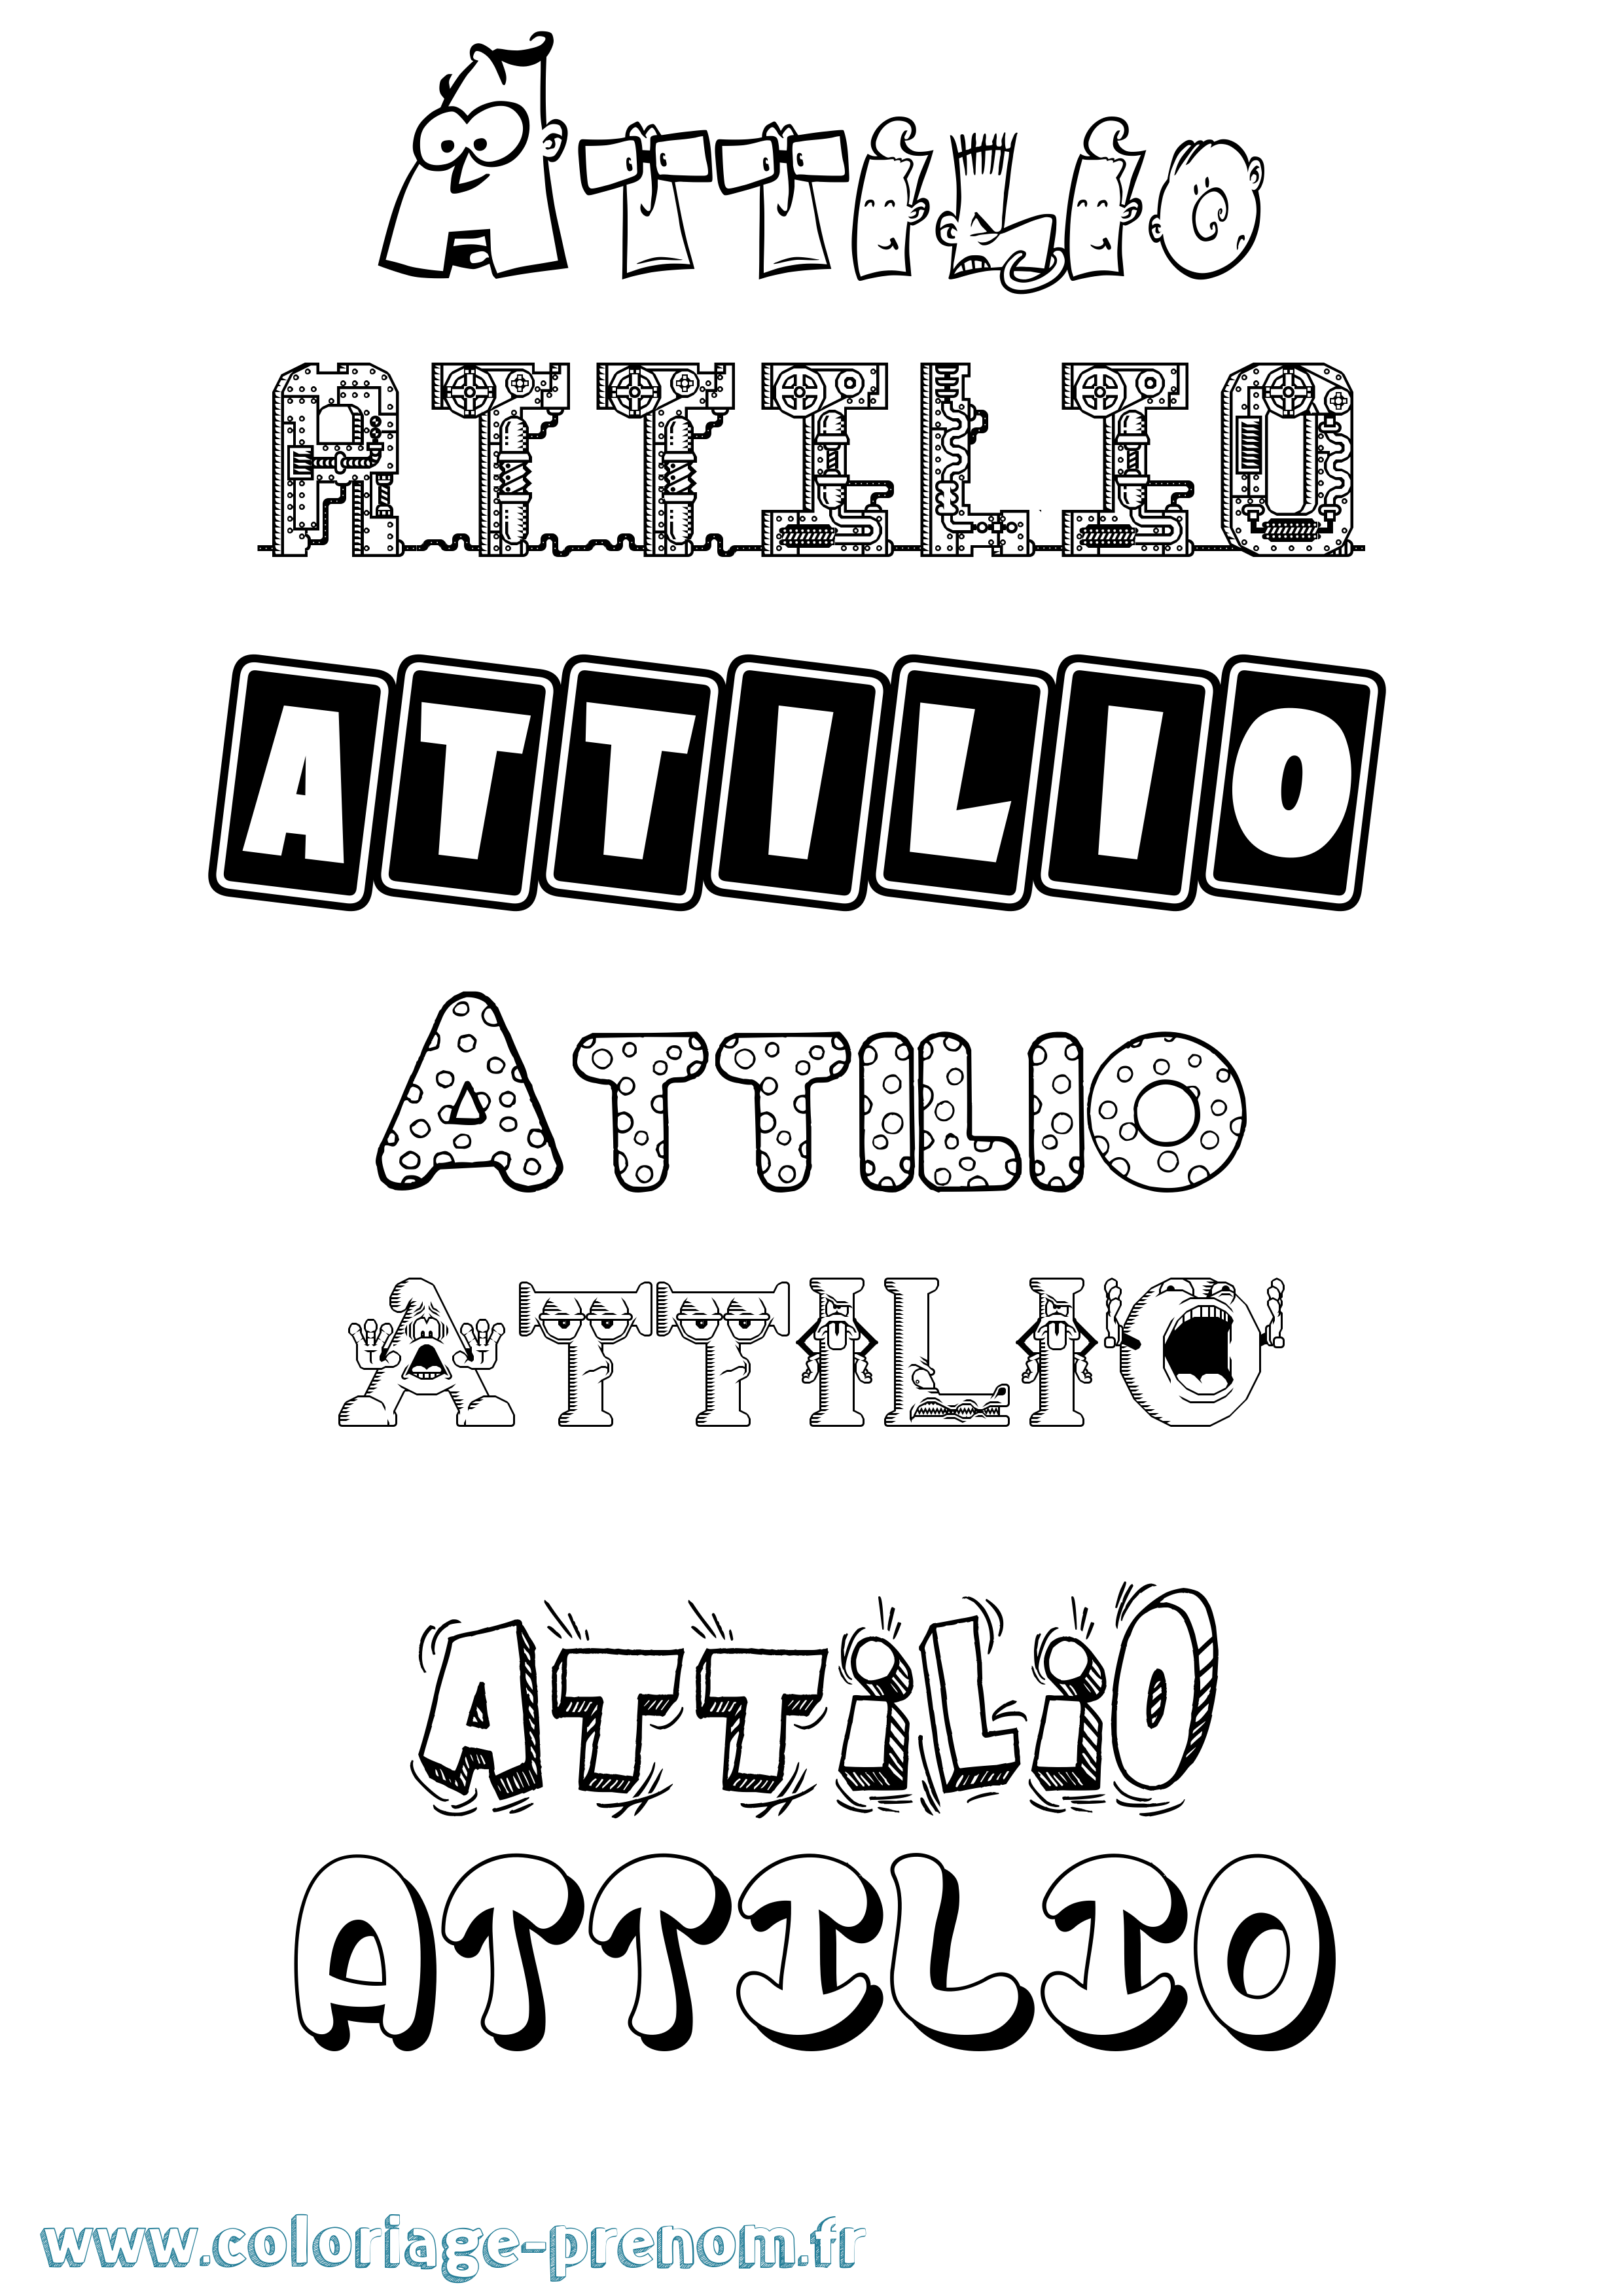 Coloriage prénom Attilio Fun